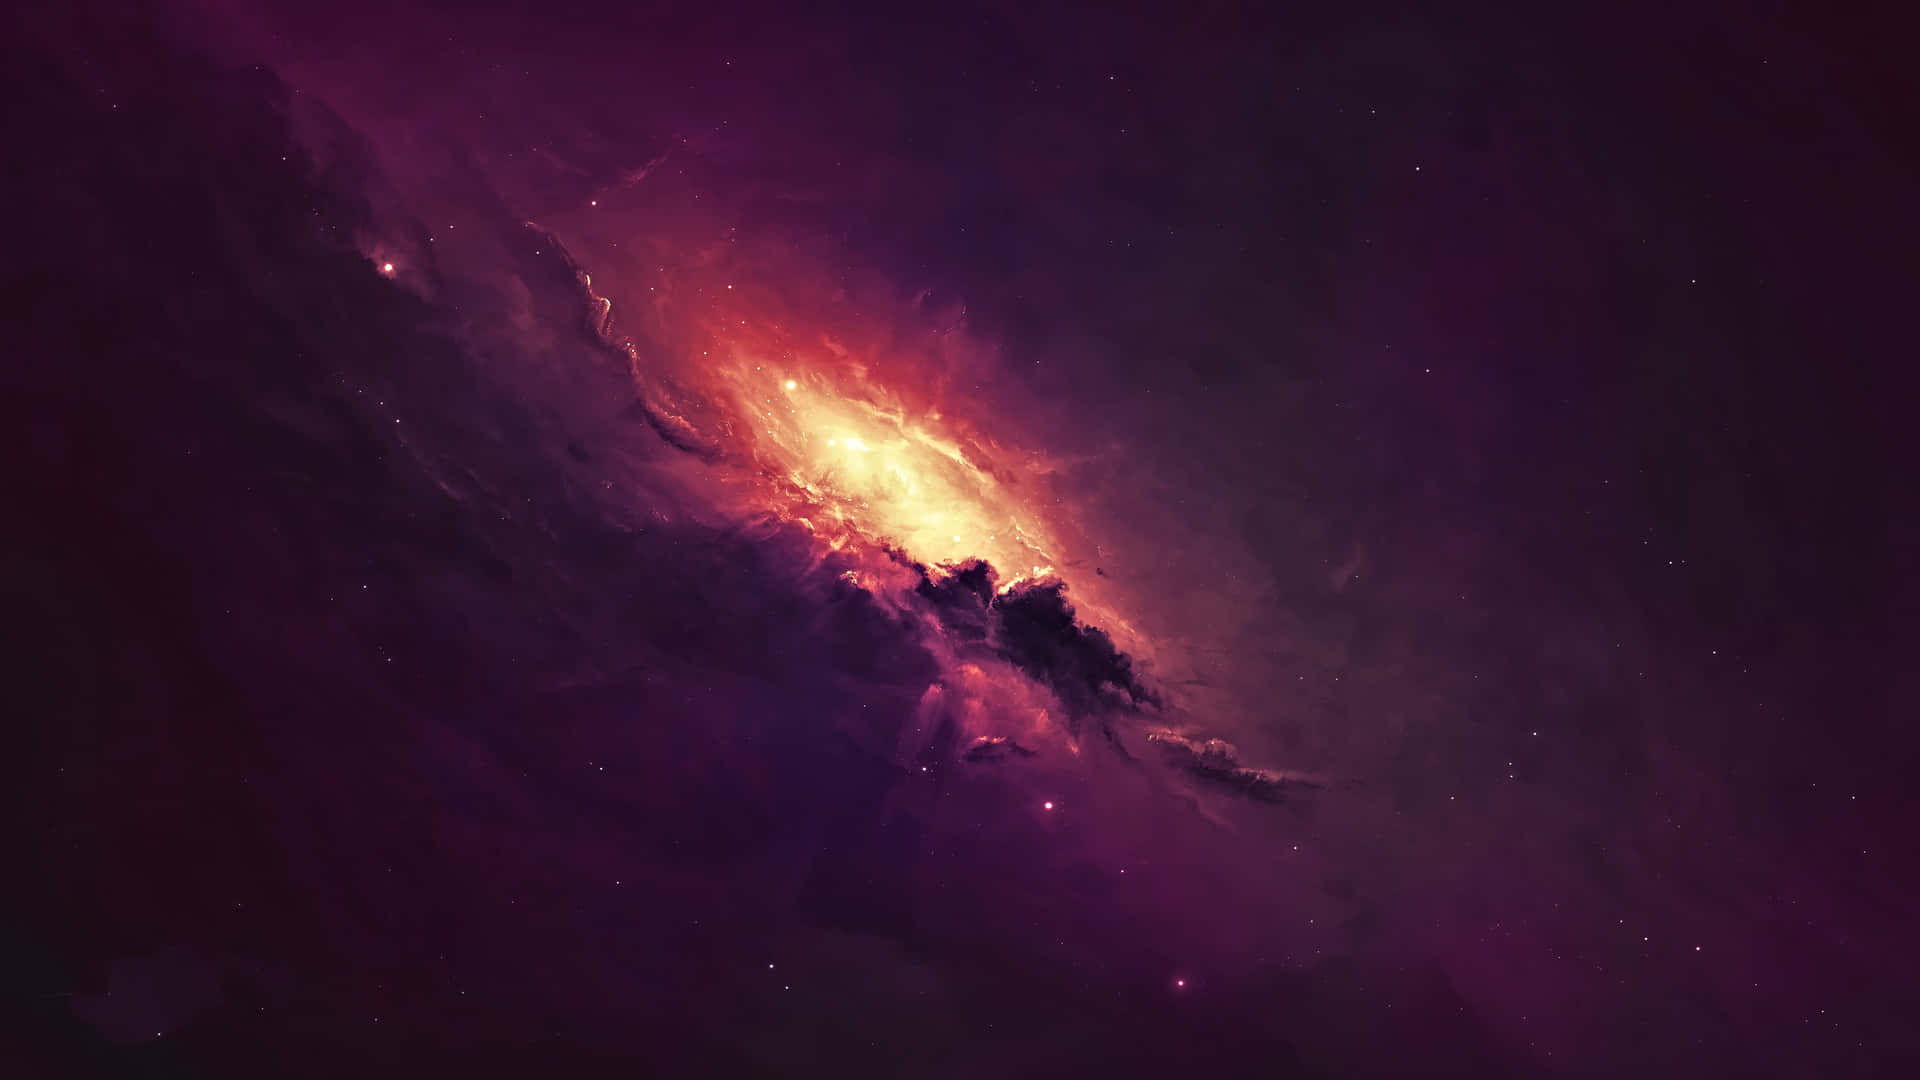 Unavista Cautivadora De Una Colorida Galaxia Negra Y Morada. Fondo de pantalla